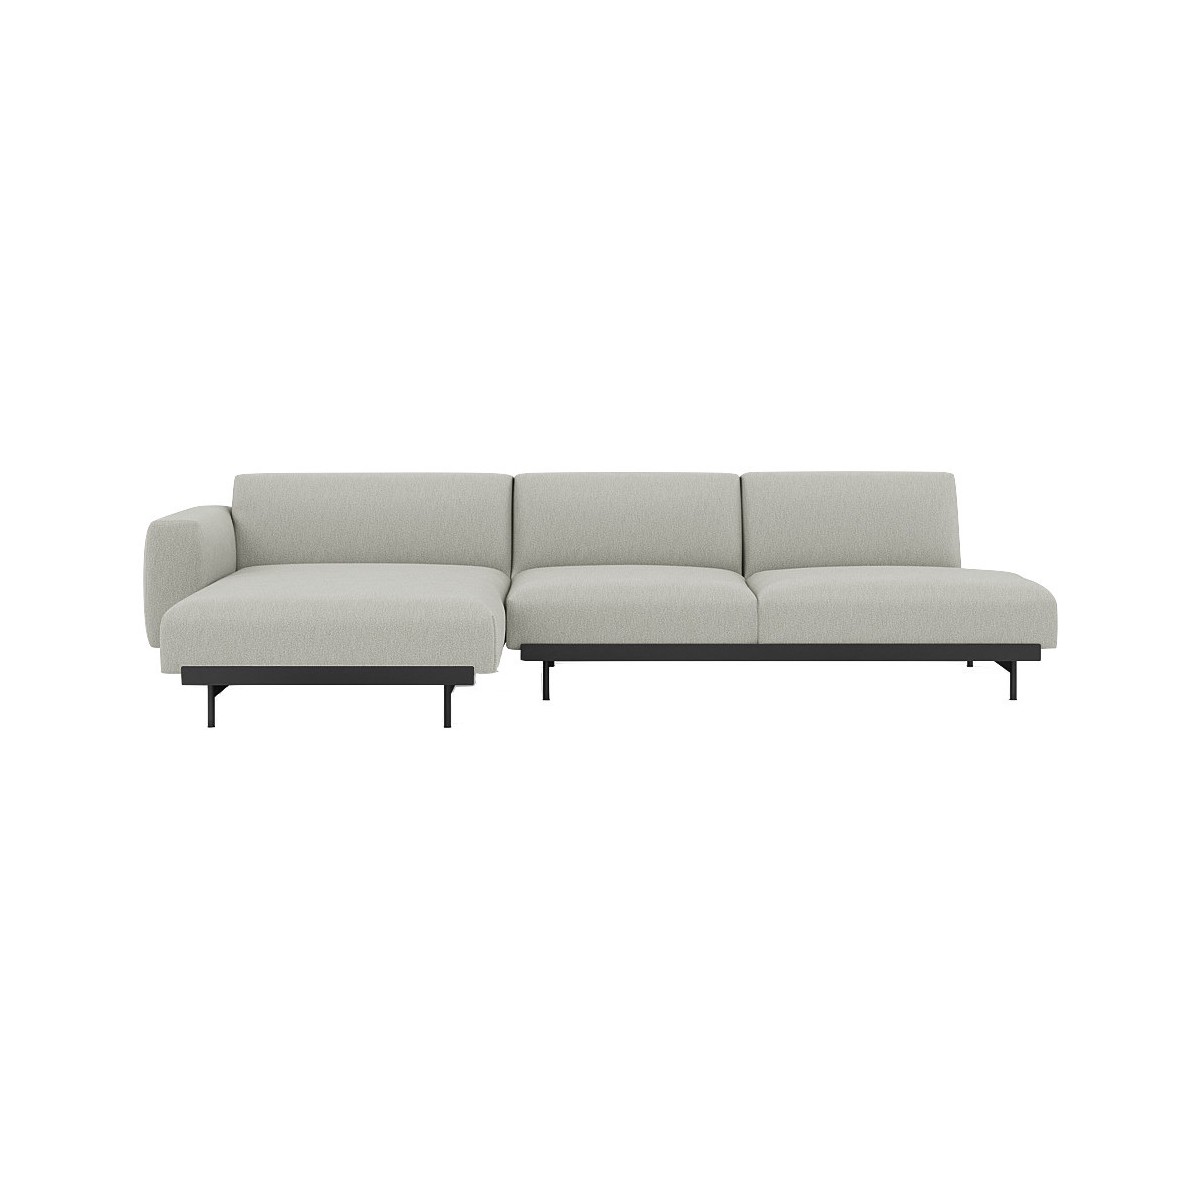 Clay 12 / black – In Situ 3-seater sofa / configuration 9 – 297 x 169 cm